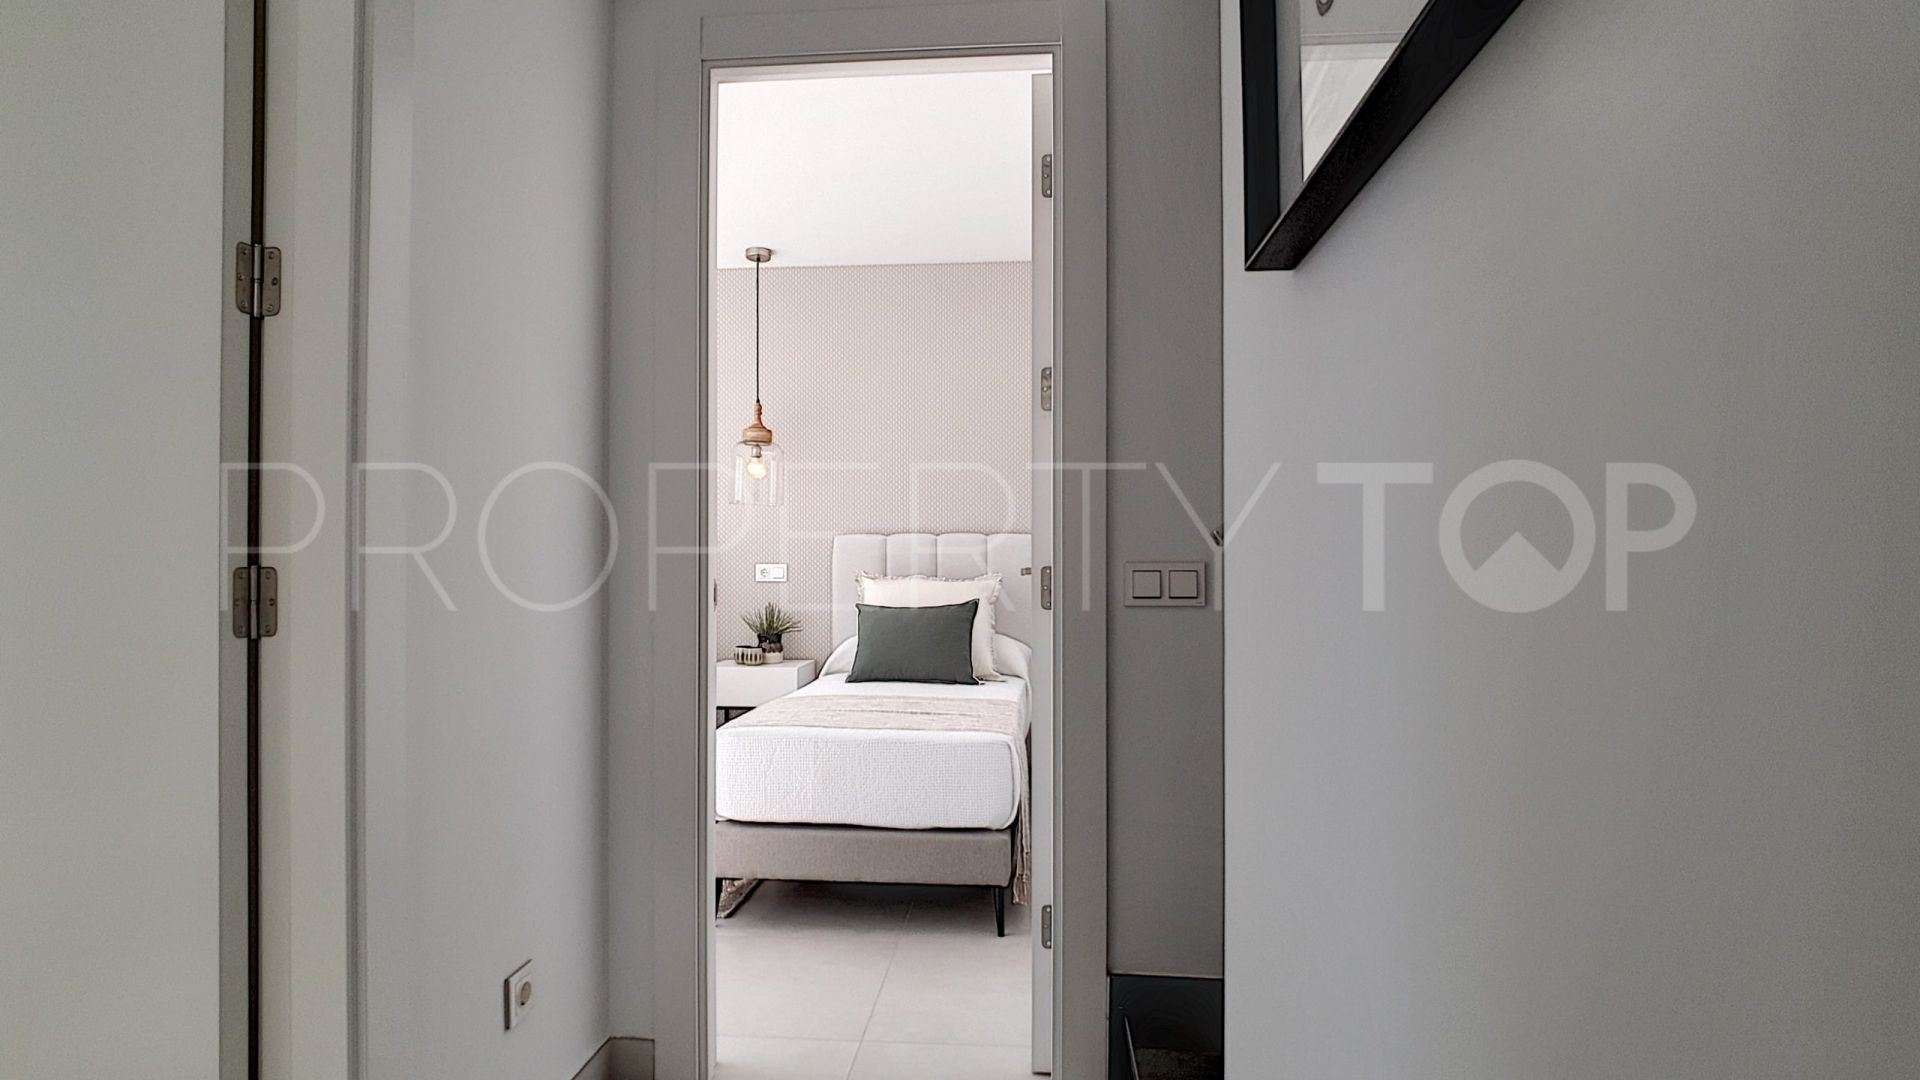 Los Altos de los Monteros 3 bedrooms duplex for sale